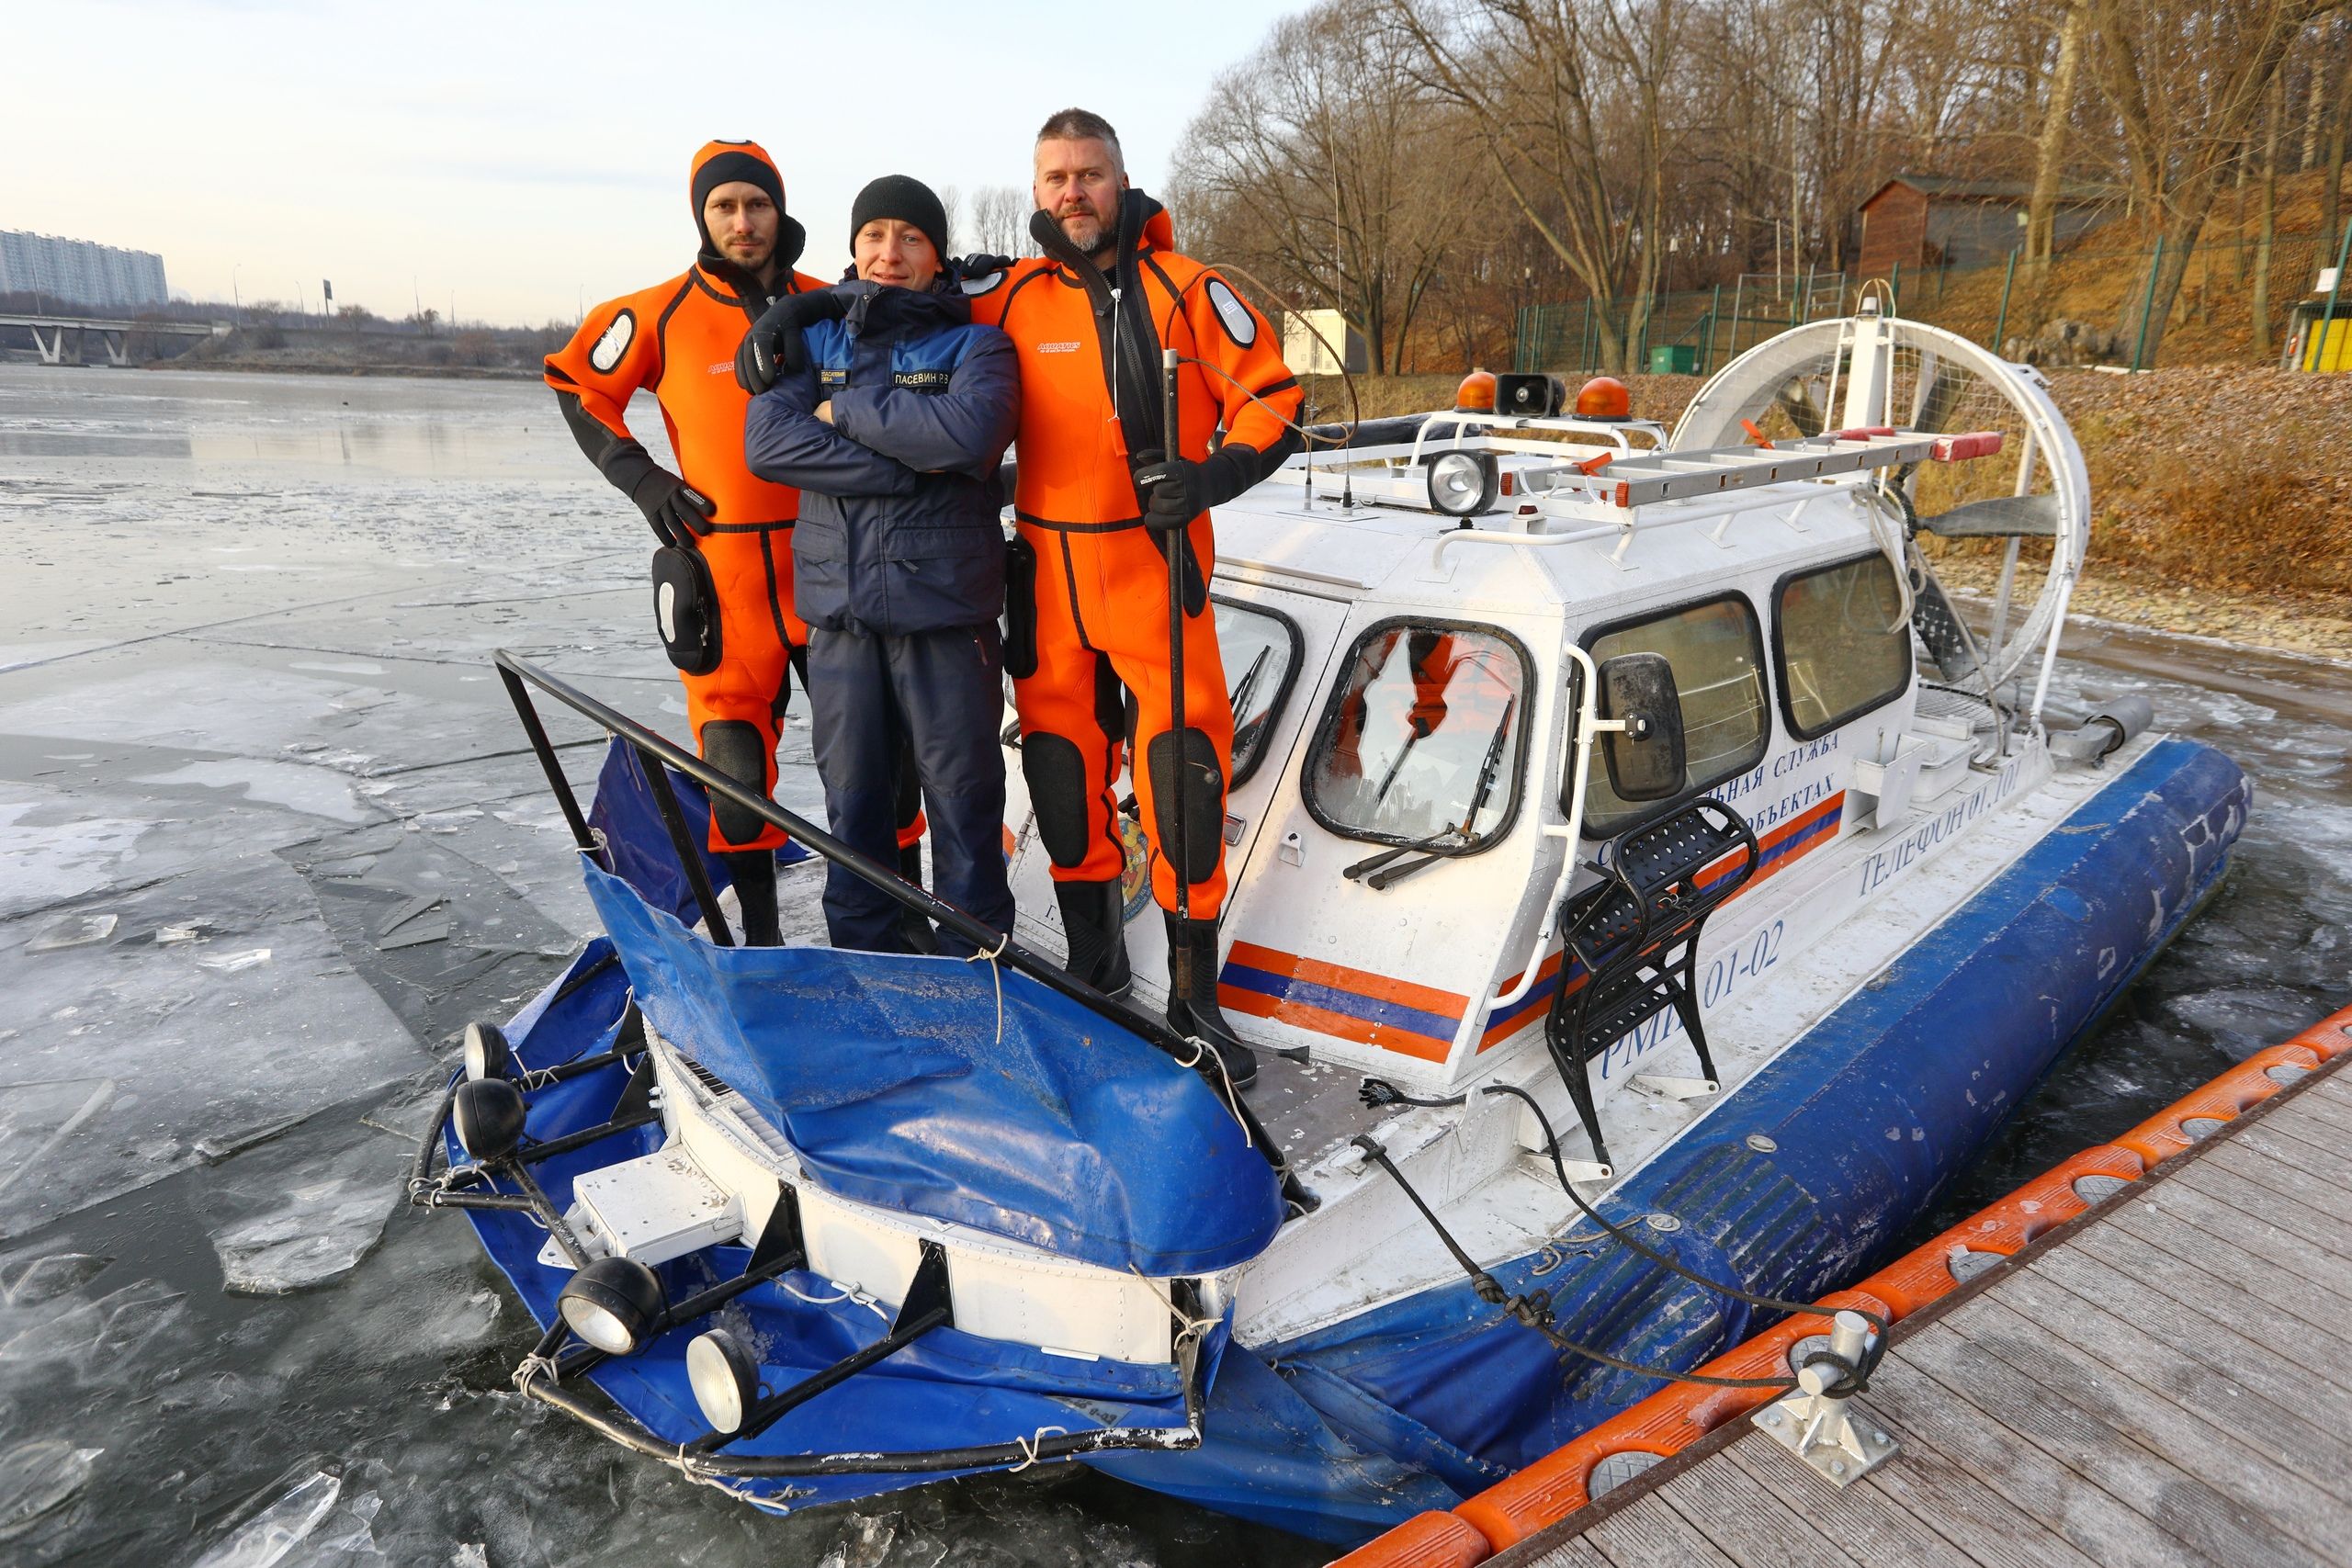 Московские спасатели предупреждают об опасности выхода на неокрепший лед. Фото: пресс-служба Управления по ТиНАО Департамента ГОЧСиПБ